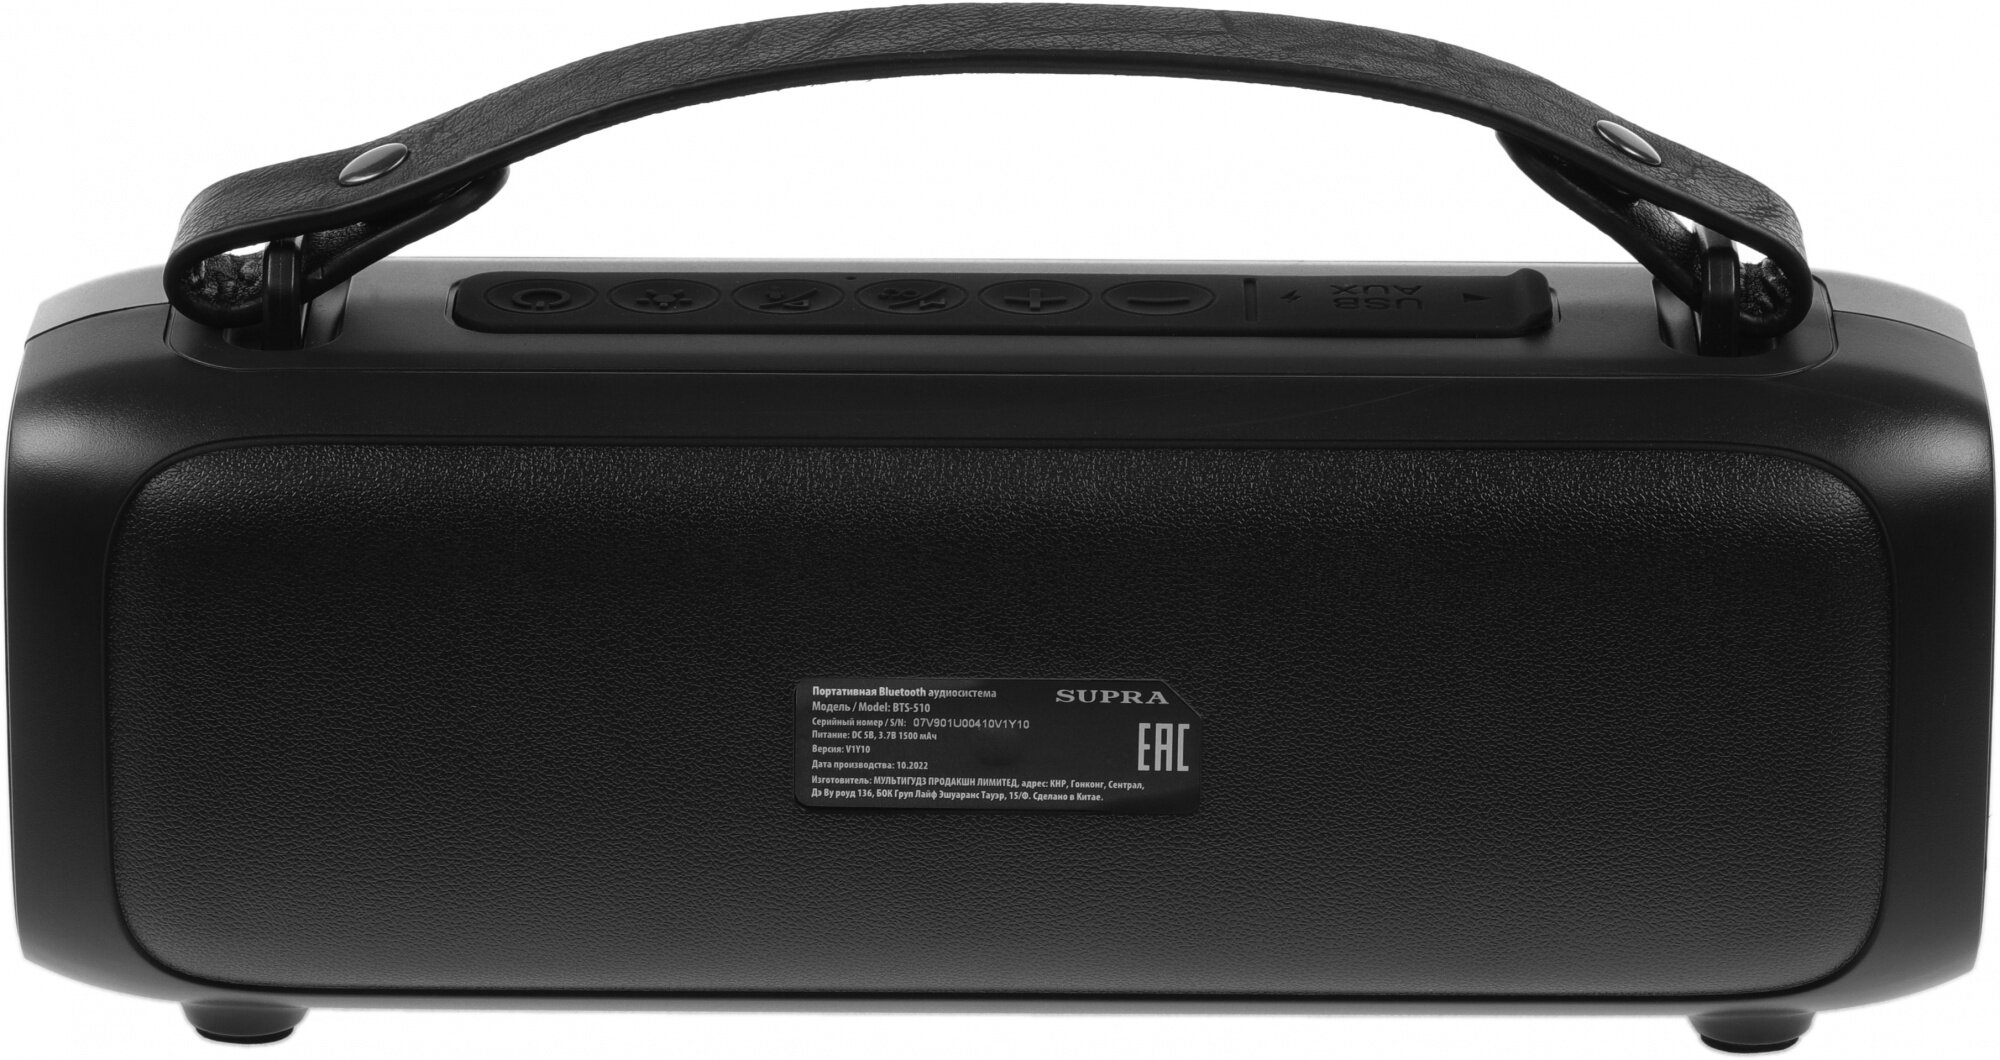 Портативная аудиосистема bluetooth SUPRA BTS-510 с функцией TWS и голосового помощника, 3 режима подсветки, FM радио, USB порт, защита от влаги